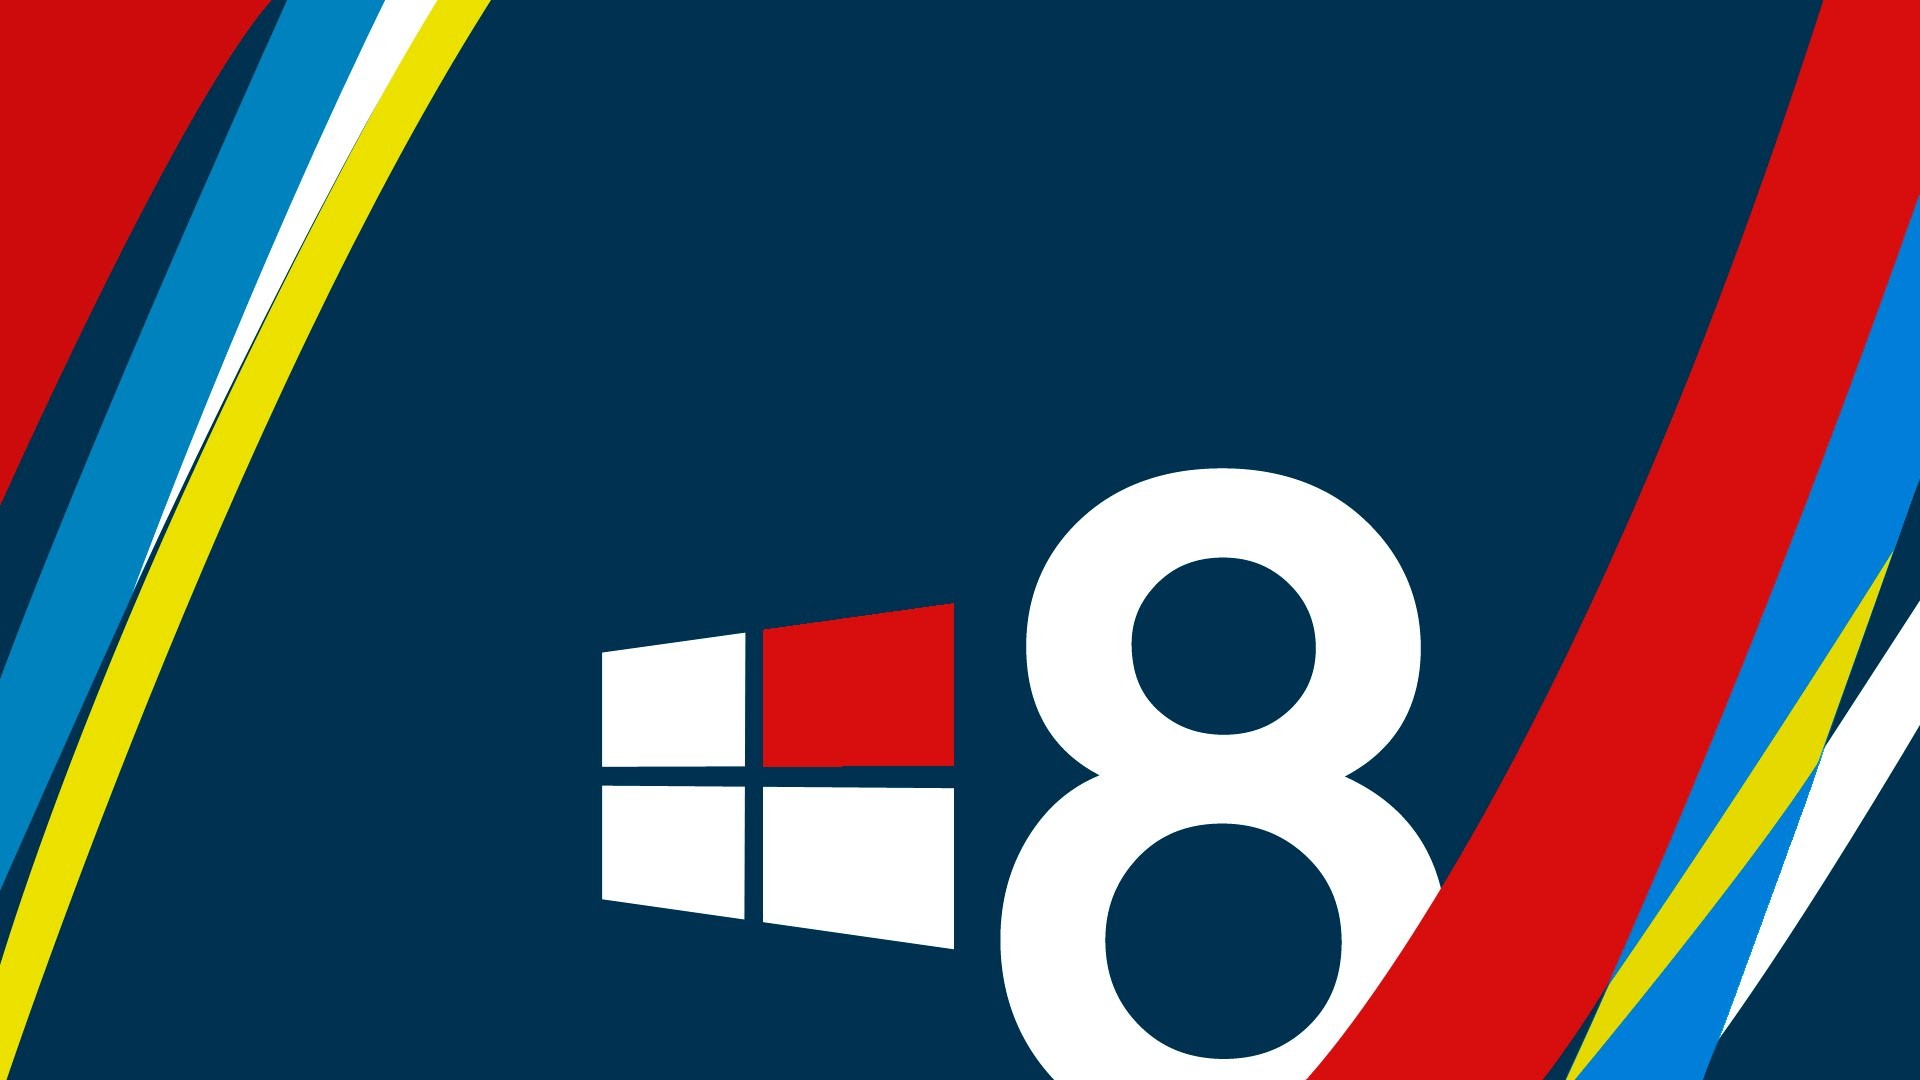 Обои для 8 1. Обои Windows 8. Windows 8.1 обои. Фон виндовс 8. Обои виндовс 8.1 стандартные.